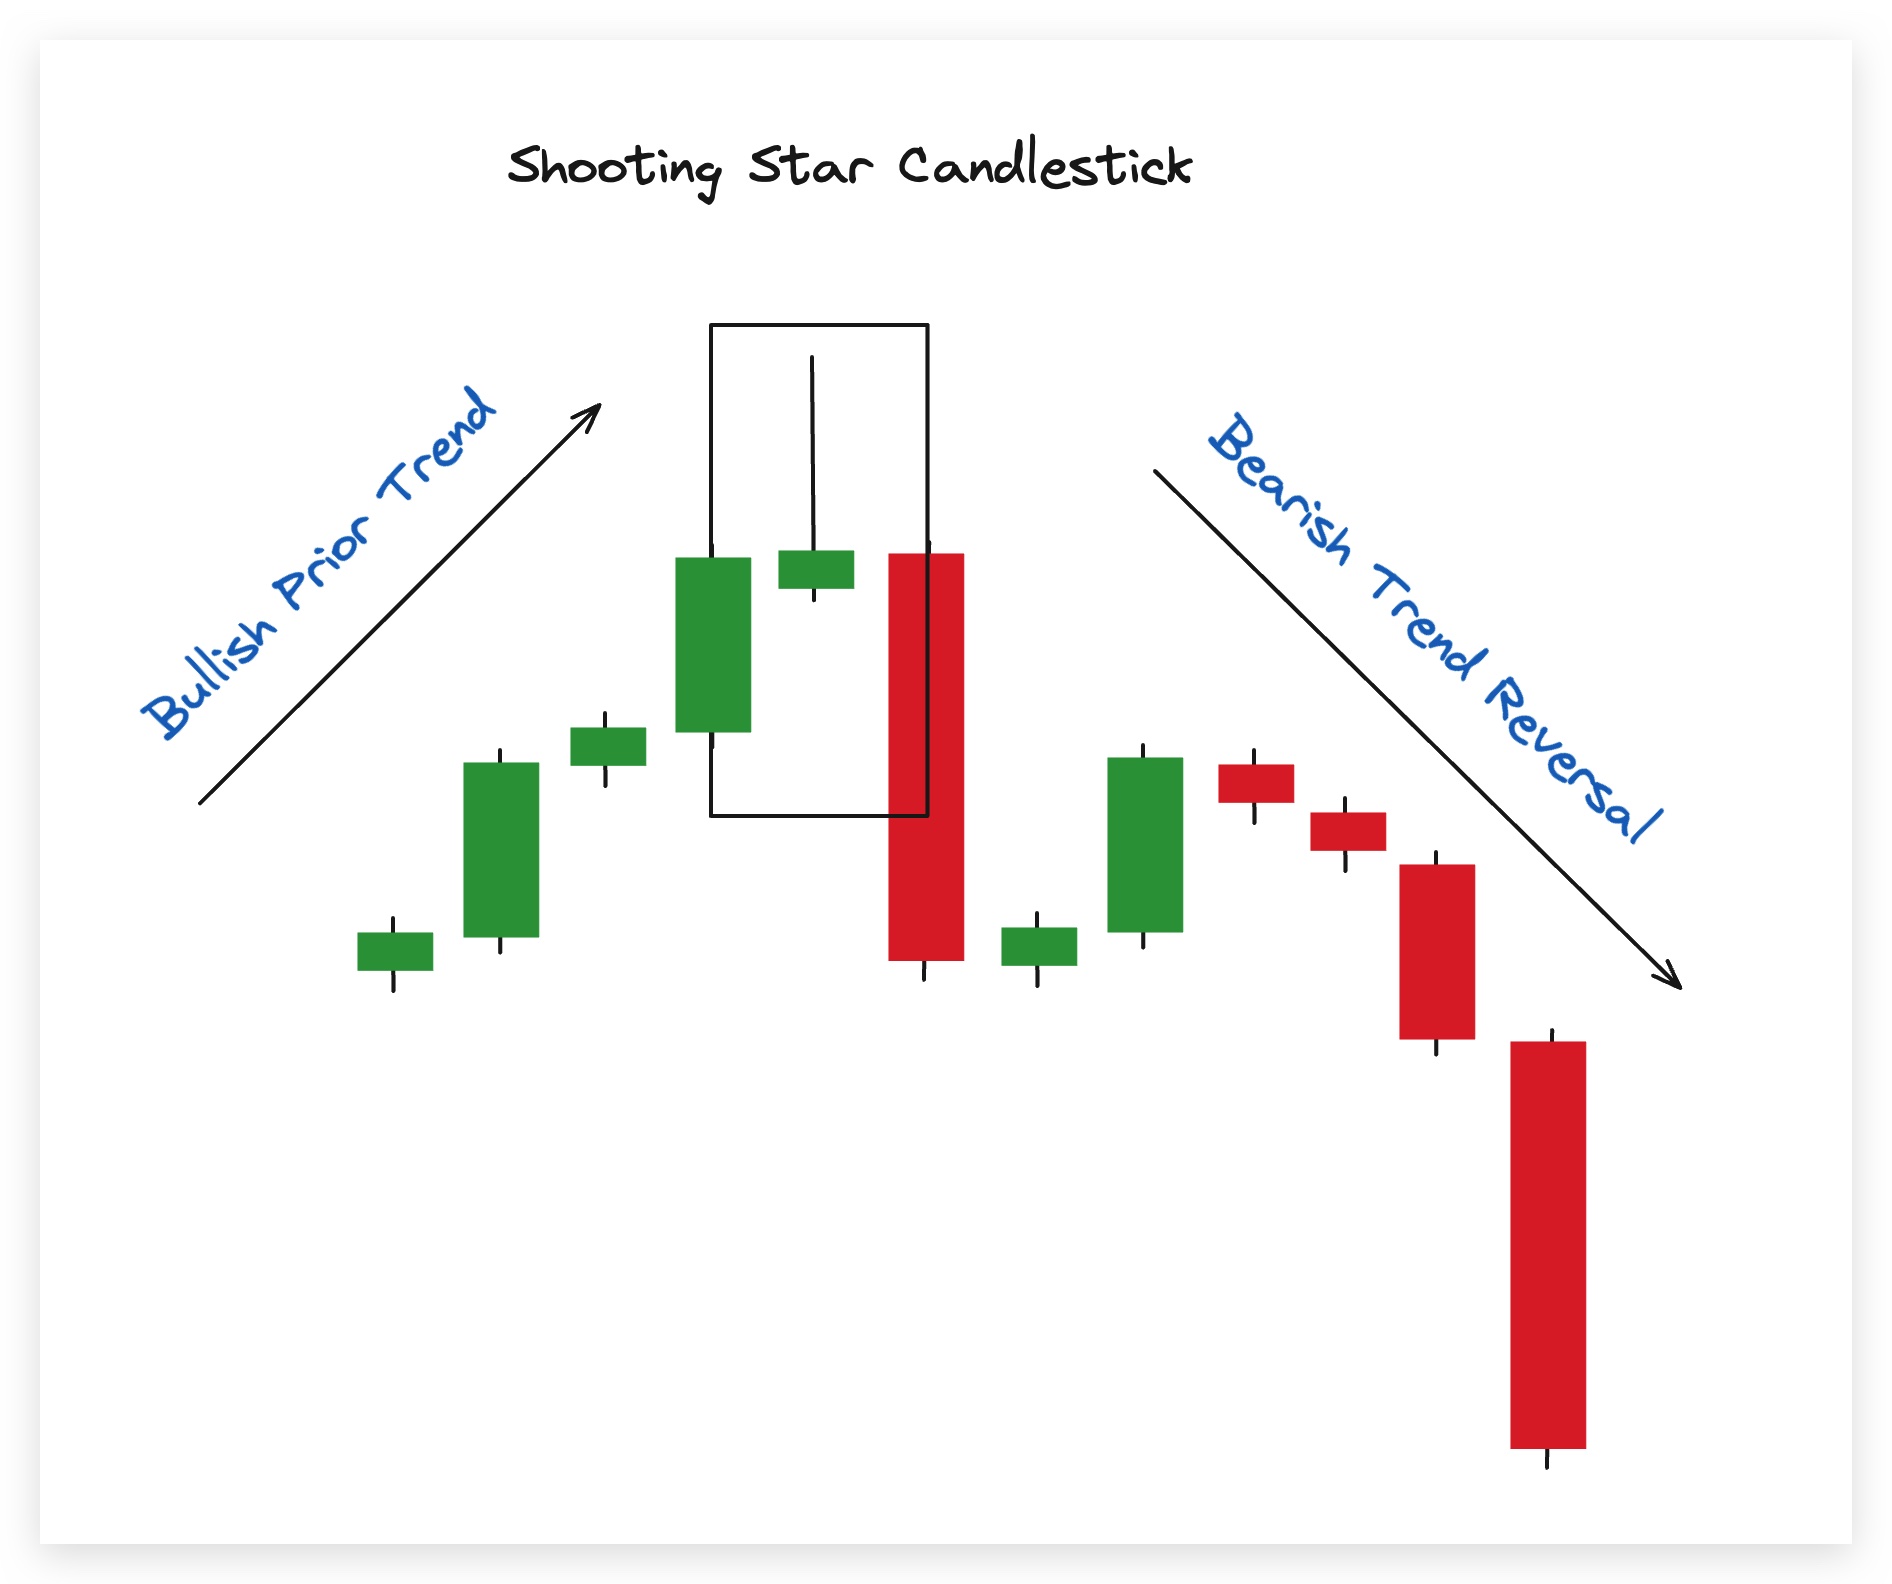 Bearish Shooting Star Candlestick. 
From bullish prior trend to bearish trend reversal